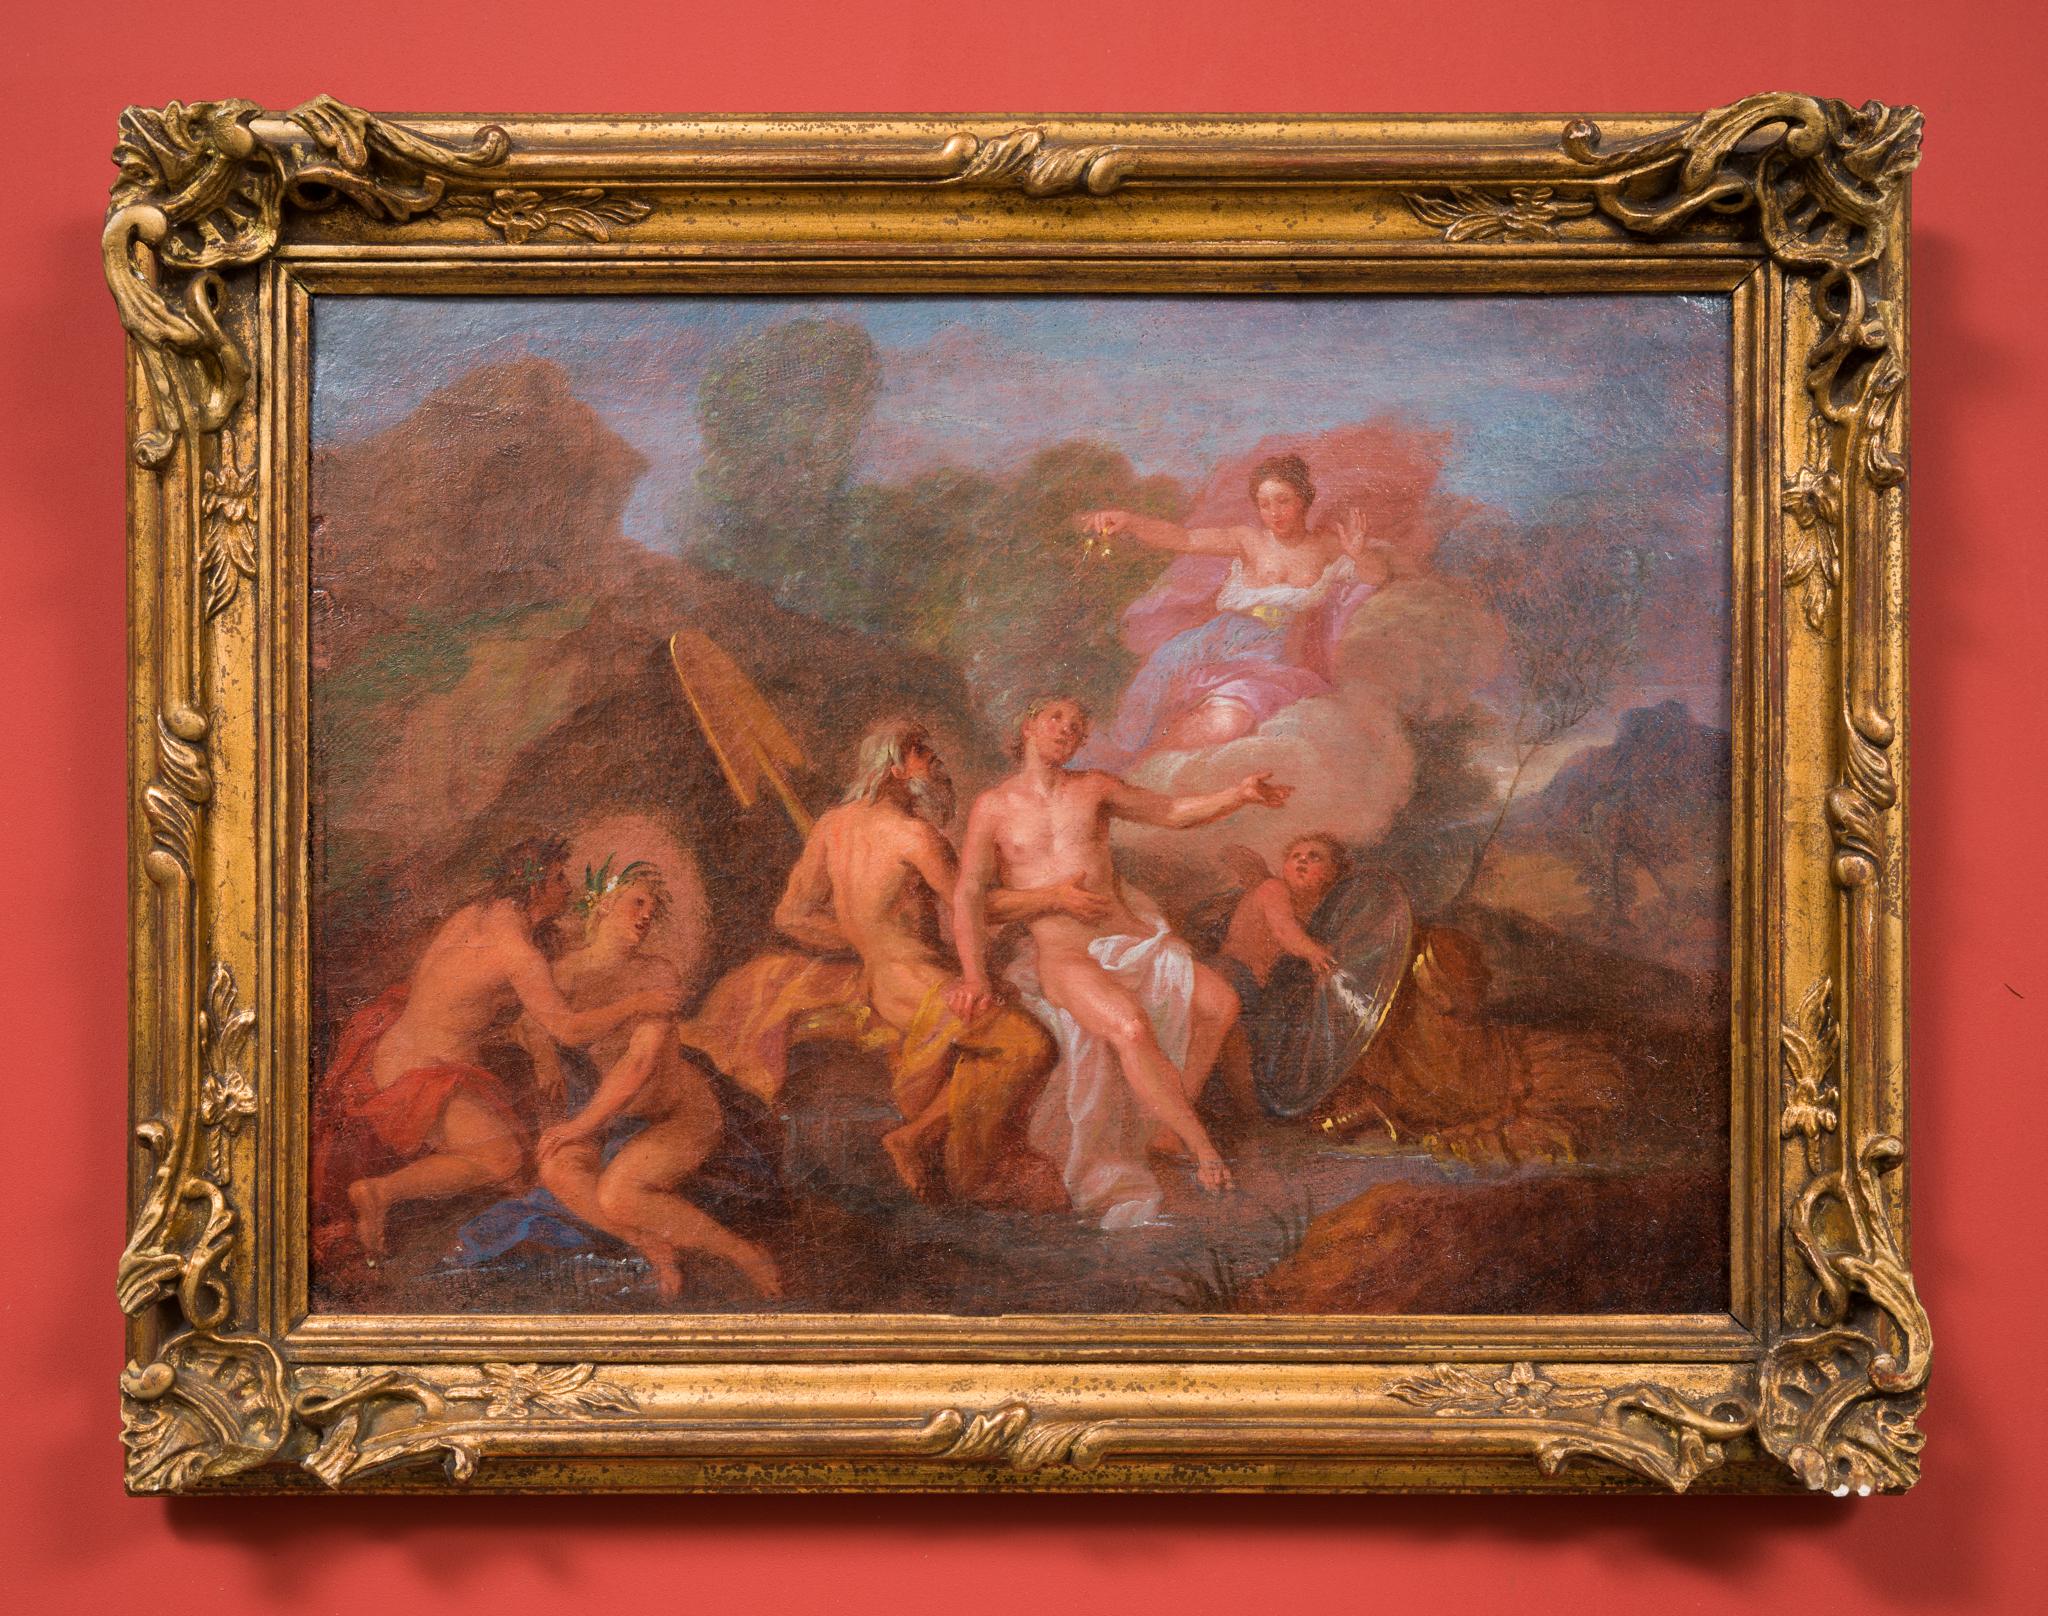 Eine mythologische Szene, frühe 1700er Jahre, Öl auf Leinwand – Painting von Charles Antoine Coypel